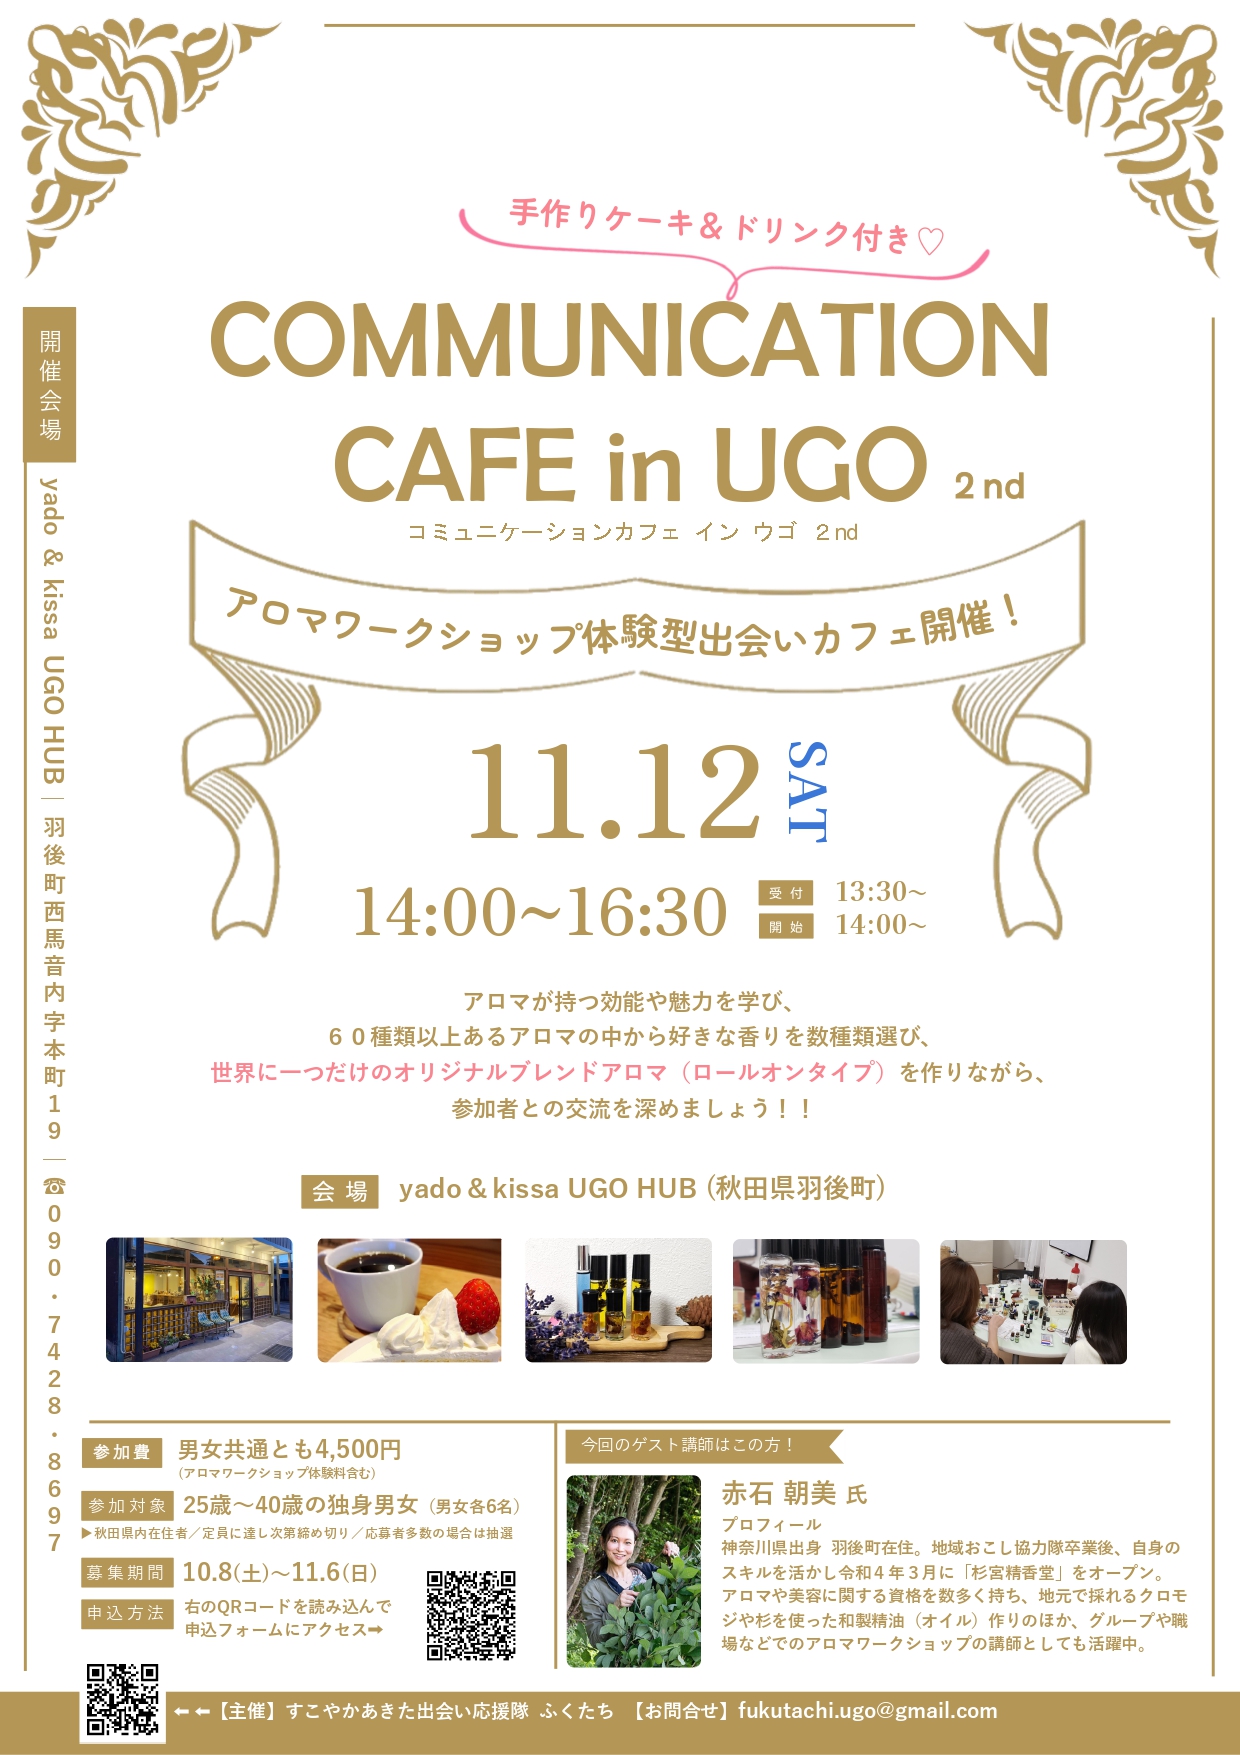 COMMUNICATION CAFE in UGO　2nd【羽後町】　